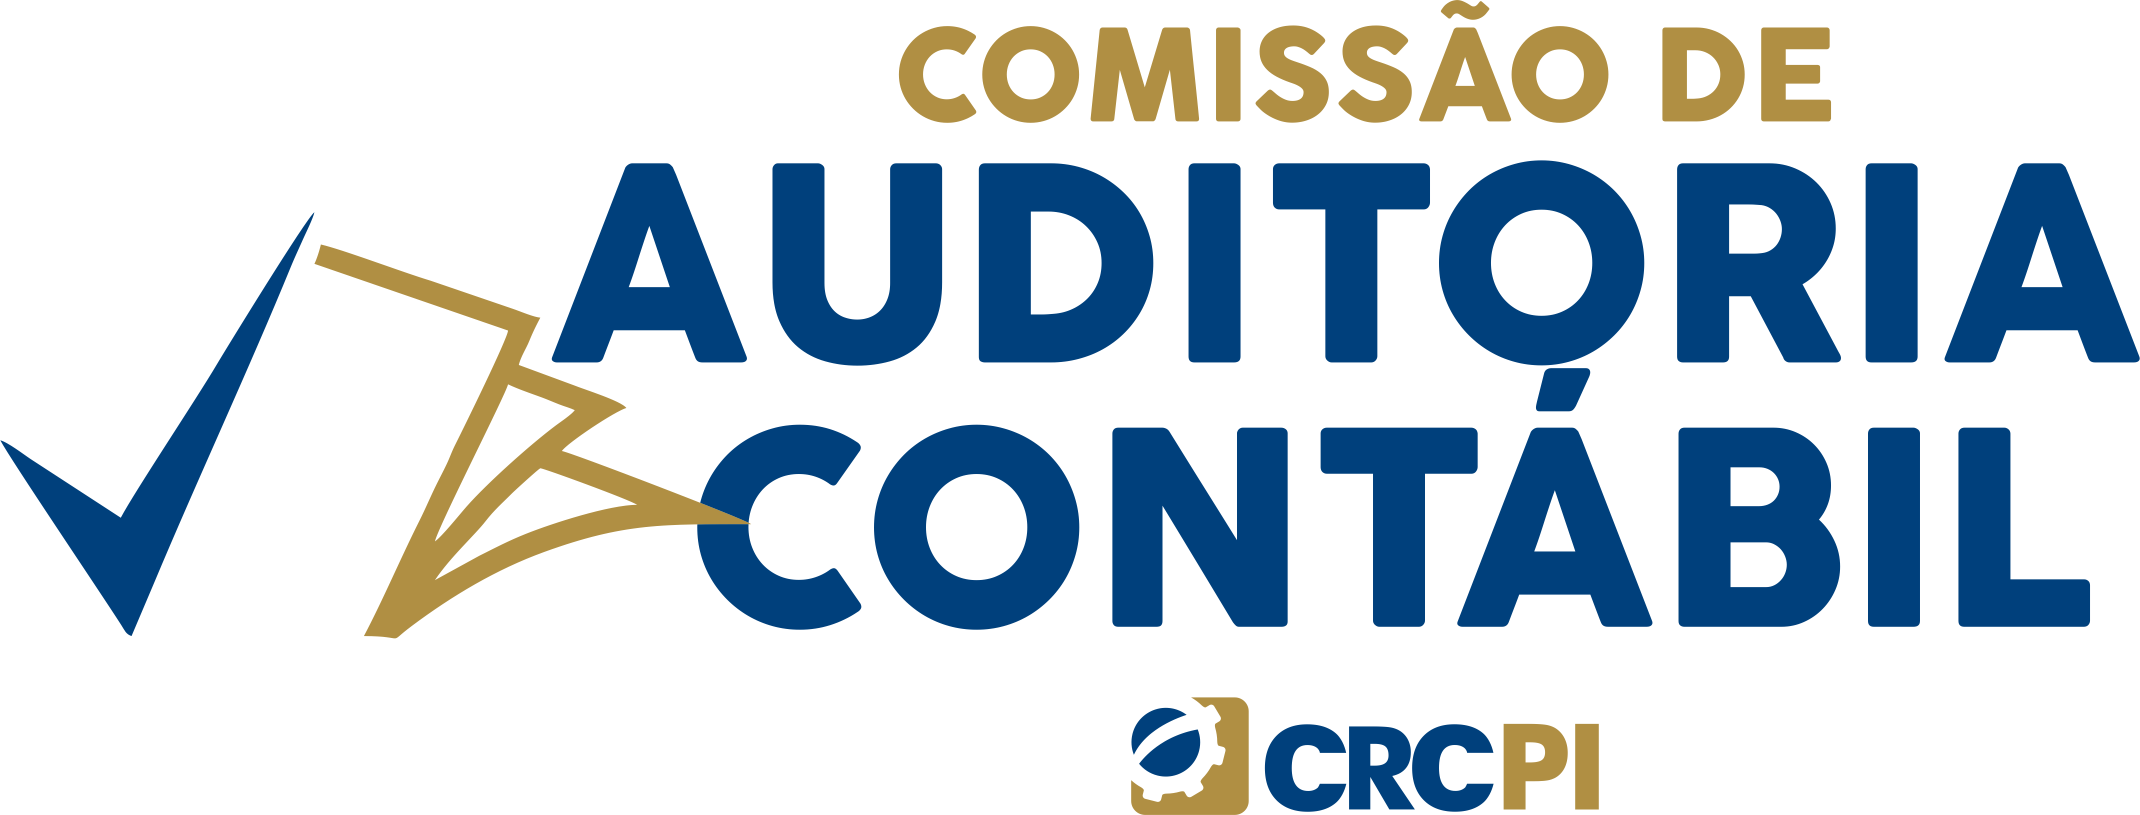 Comissao_Auditoria Contabil